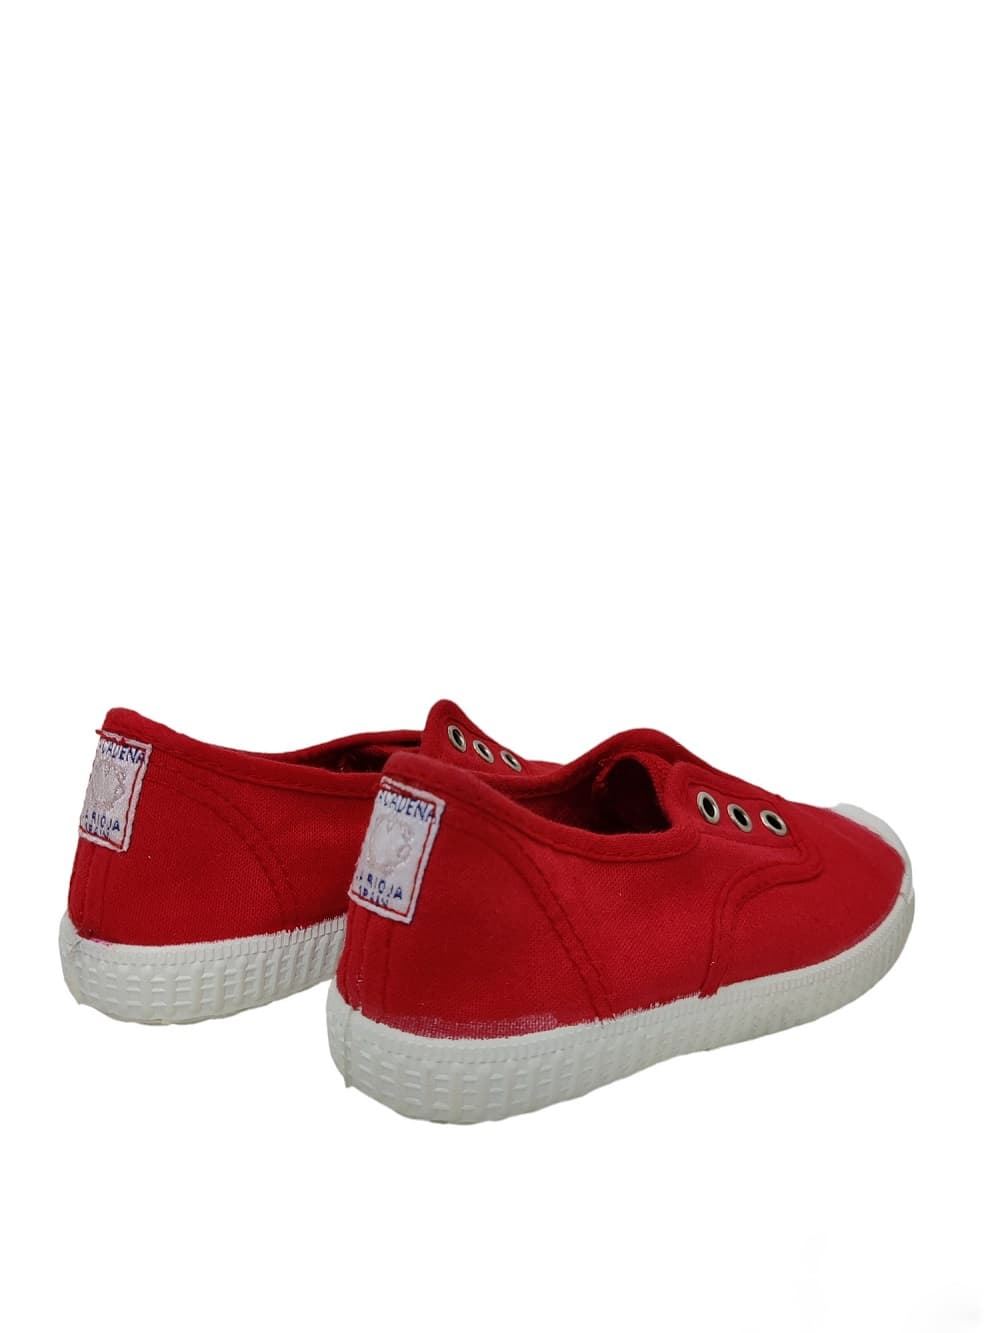 La Cadena Zapatillas niños Lona Rojo con Puntera - Imagen 3